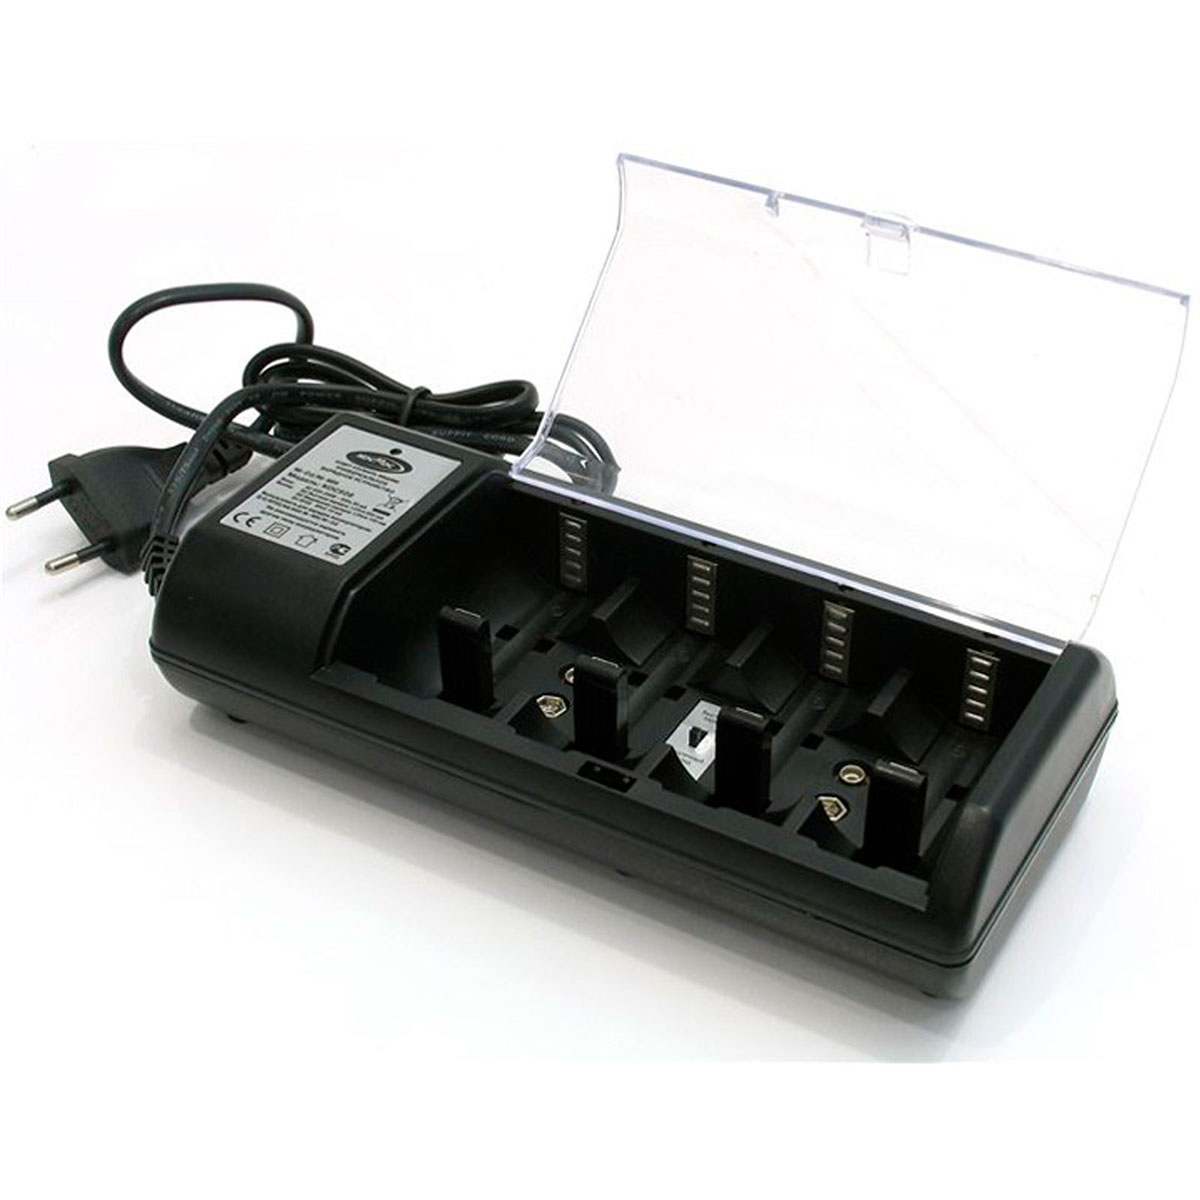 Зарядное устройство КОСМОС 509 для аккумуляторов 1-4 АА, ААА, C, D, 2 х 9V, CR2, без аккумуляторов, цвет черный